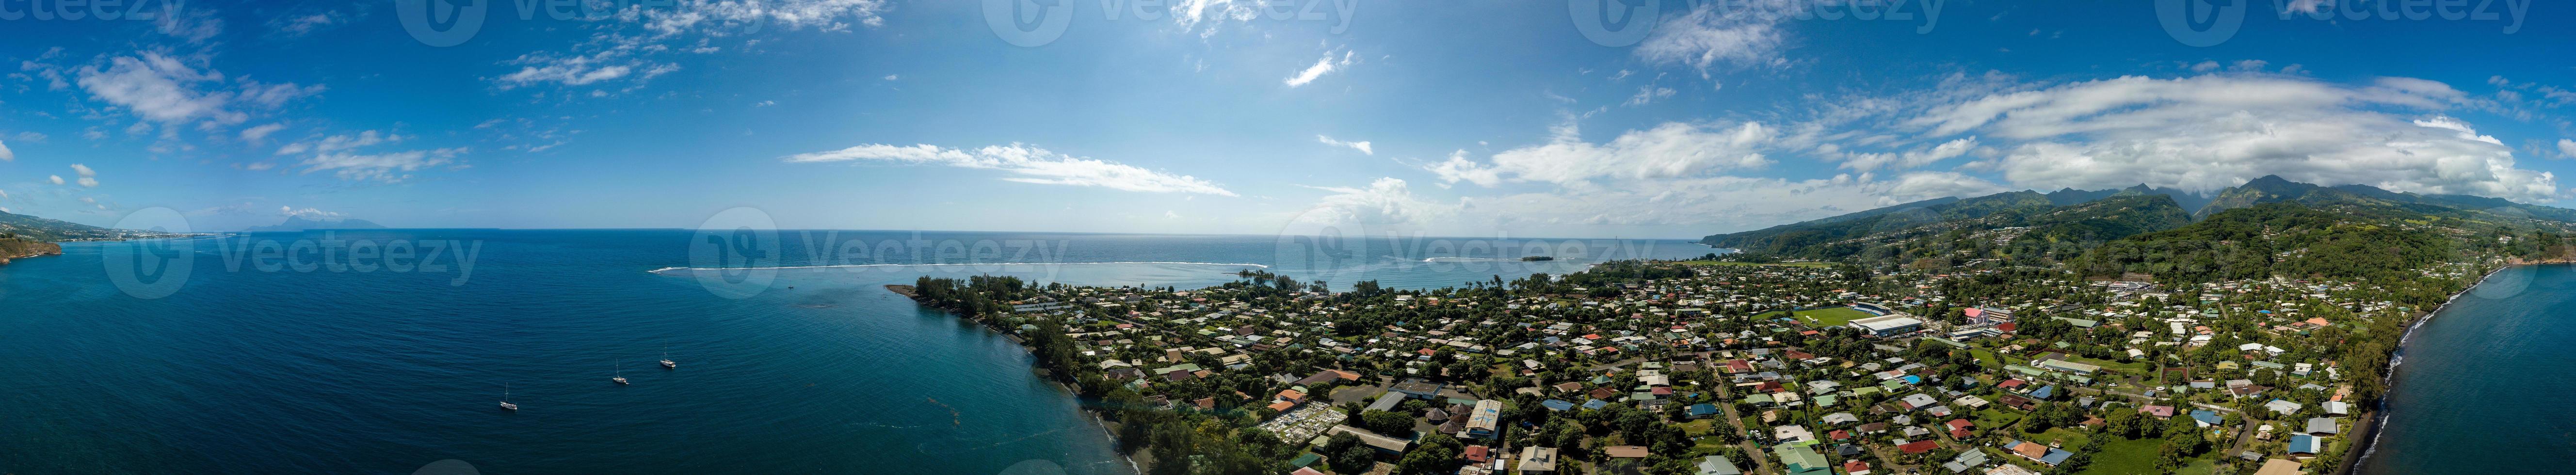 ilha tahiti polinésia francesa vista aérea da lagoa foto